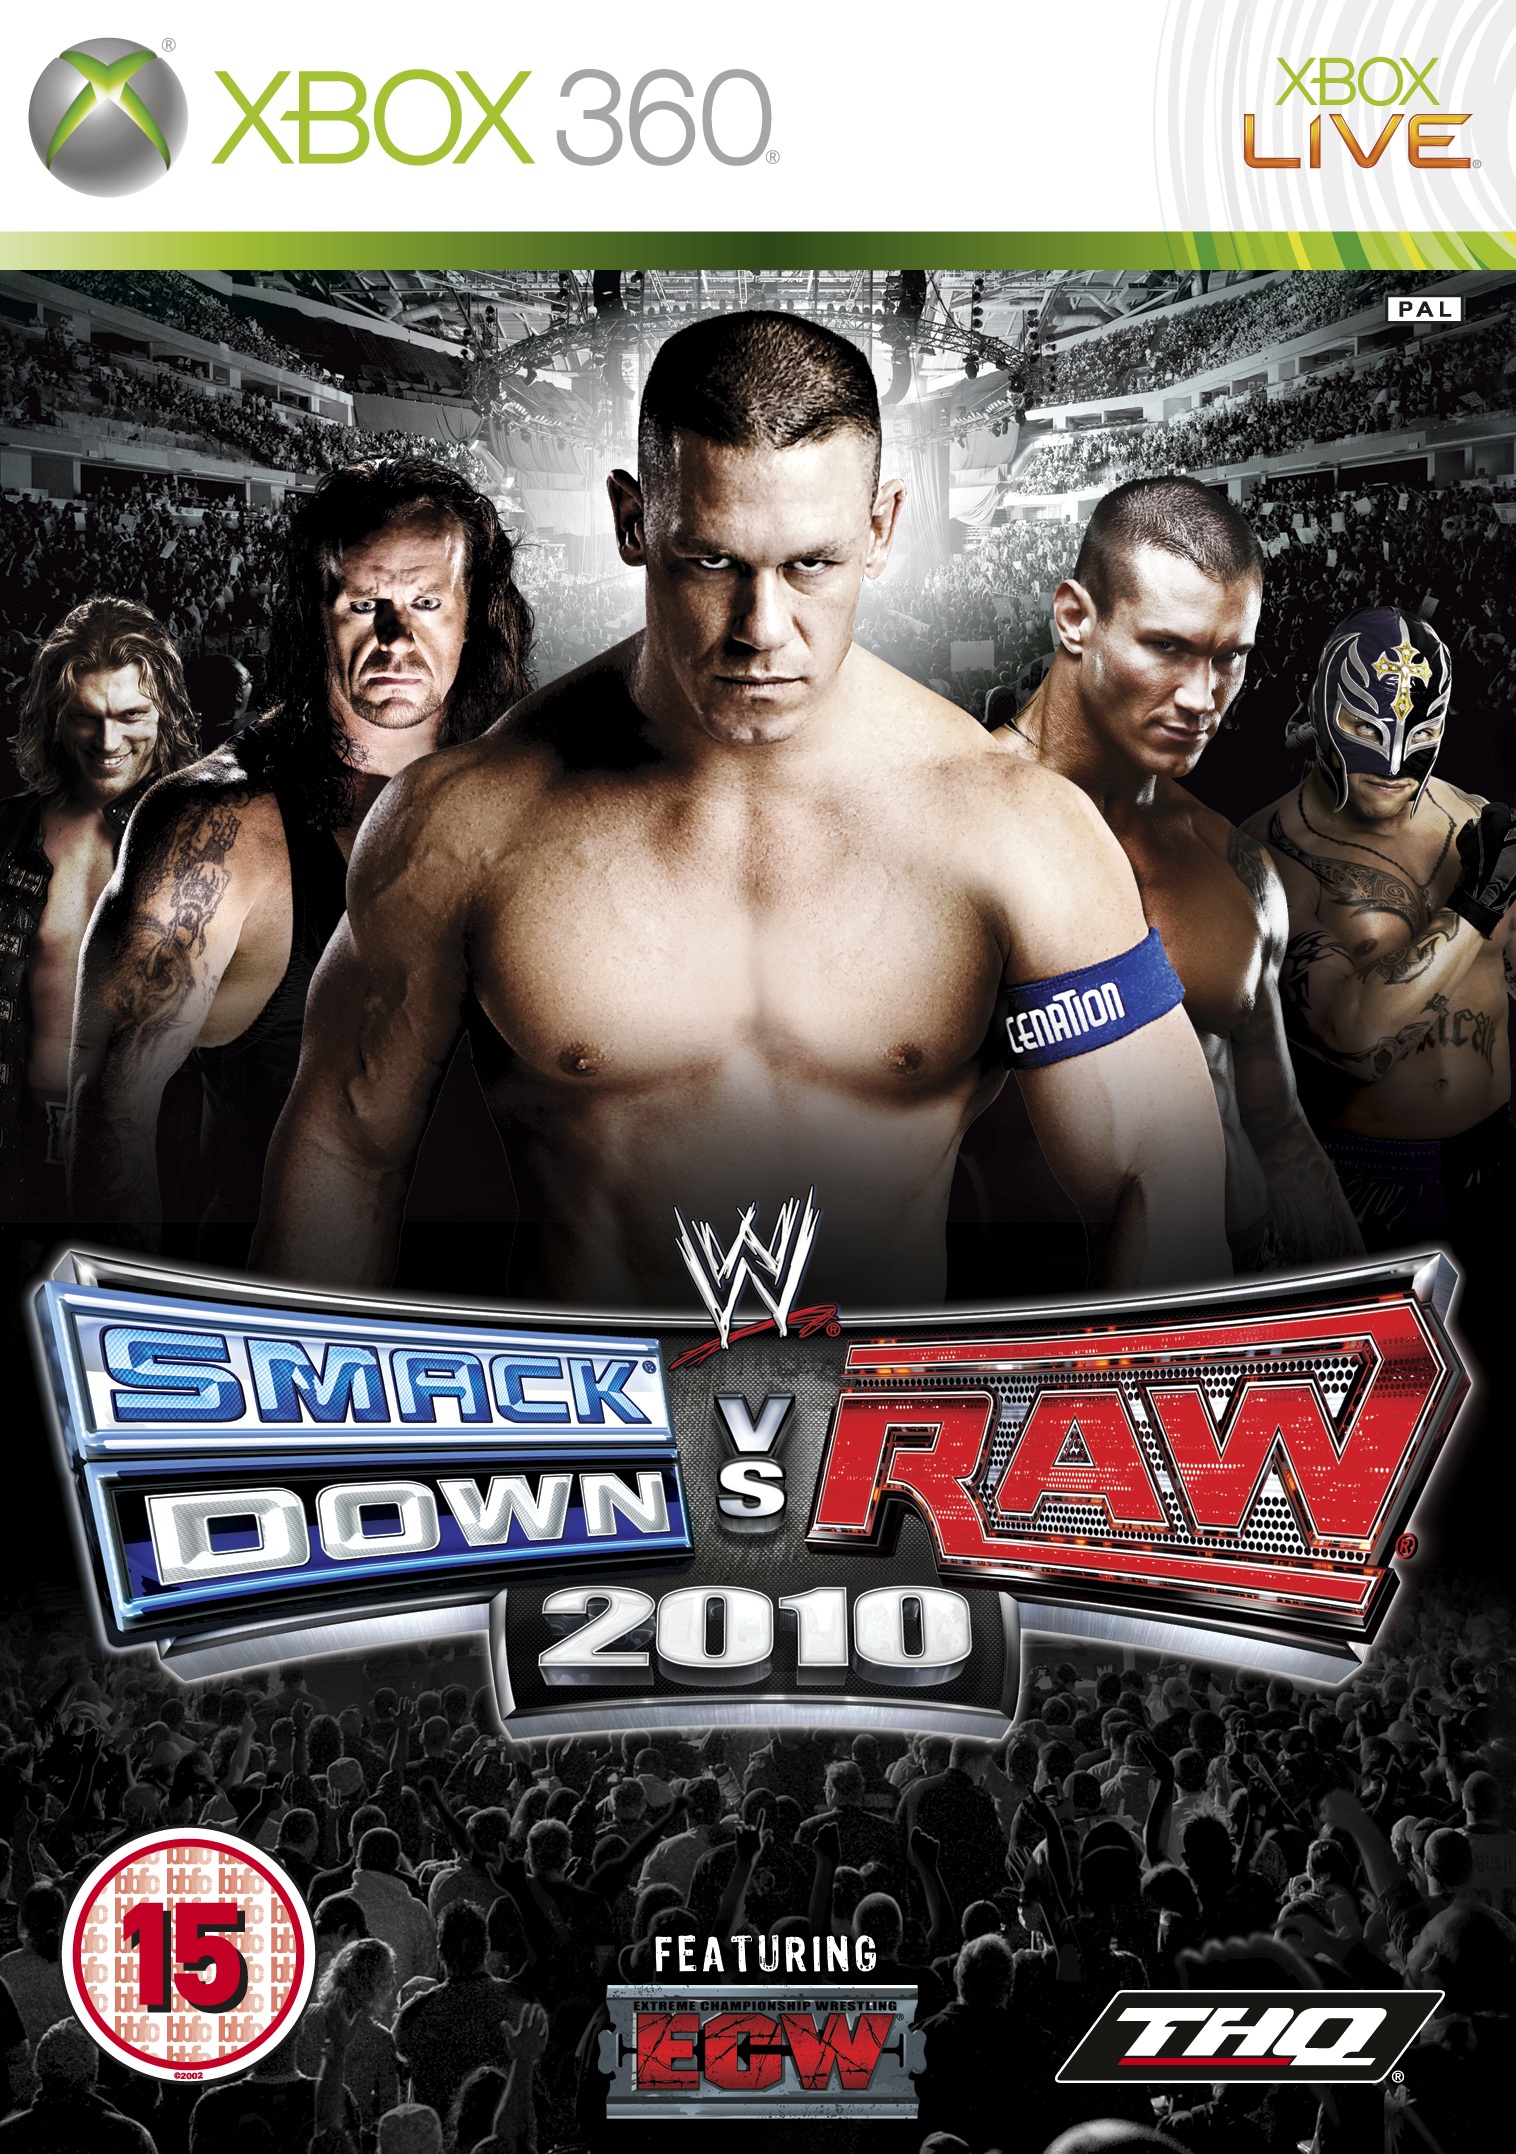 jaquette du jeu vidéo WWE Smackdown vs Raw 2010